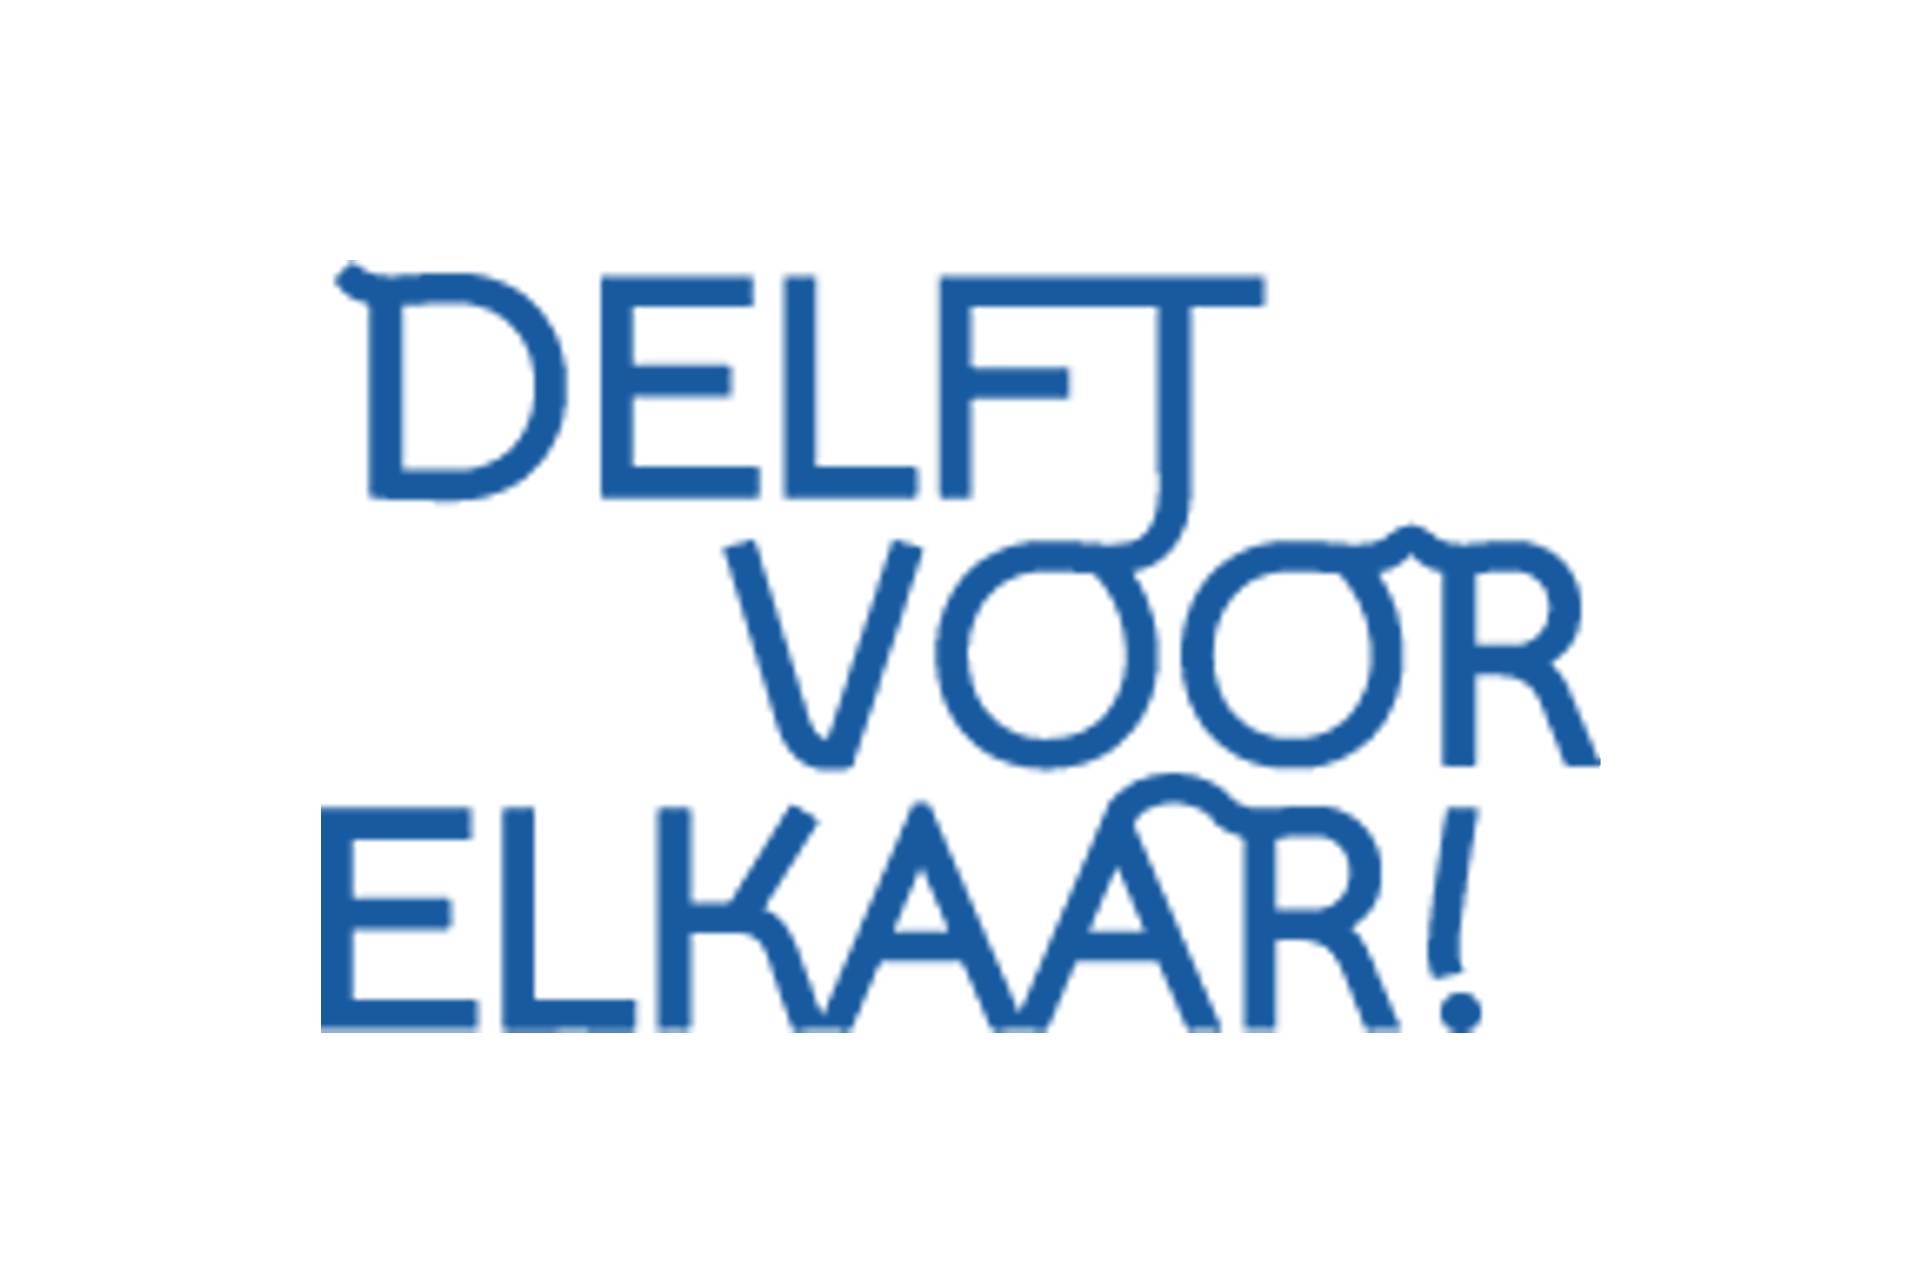 Delft voor Elkaar